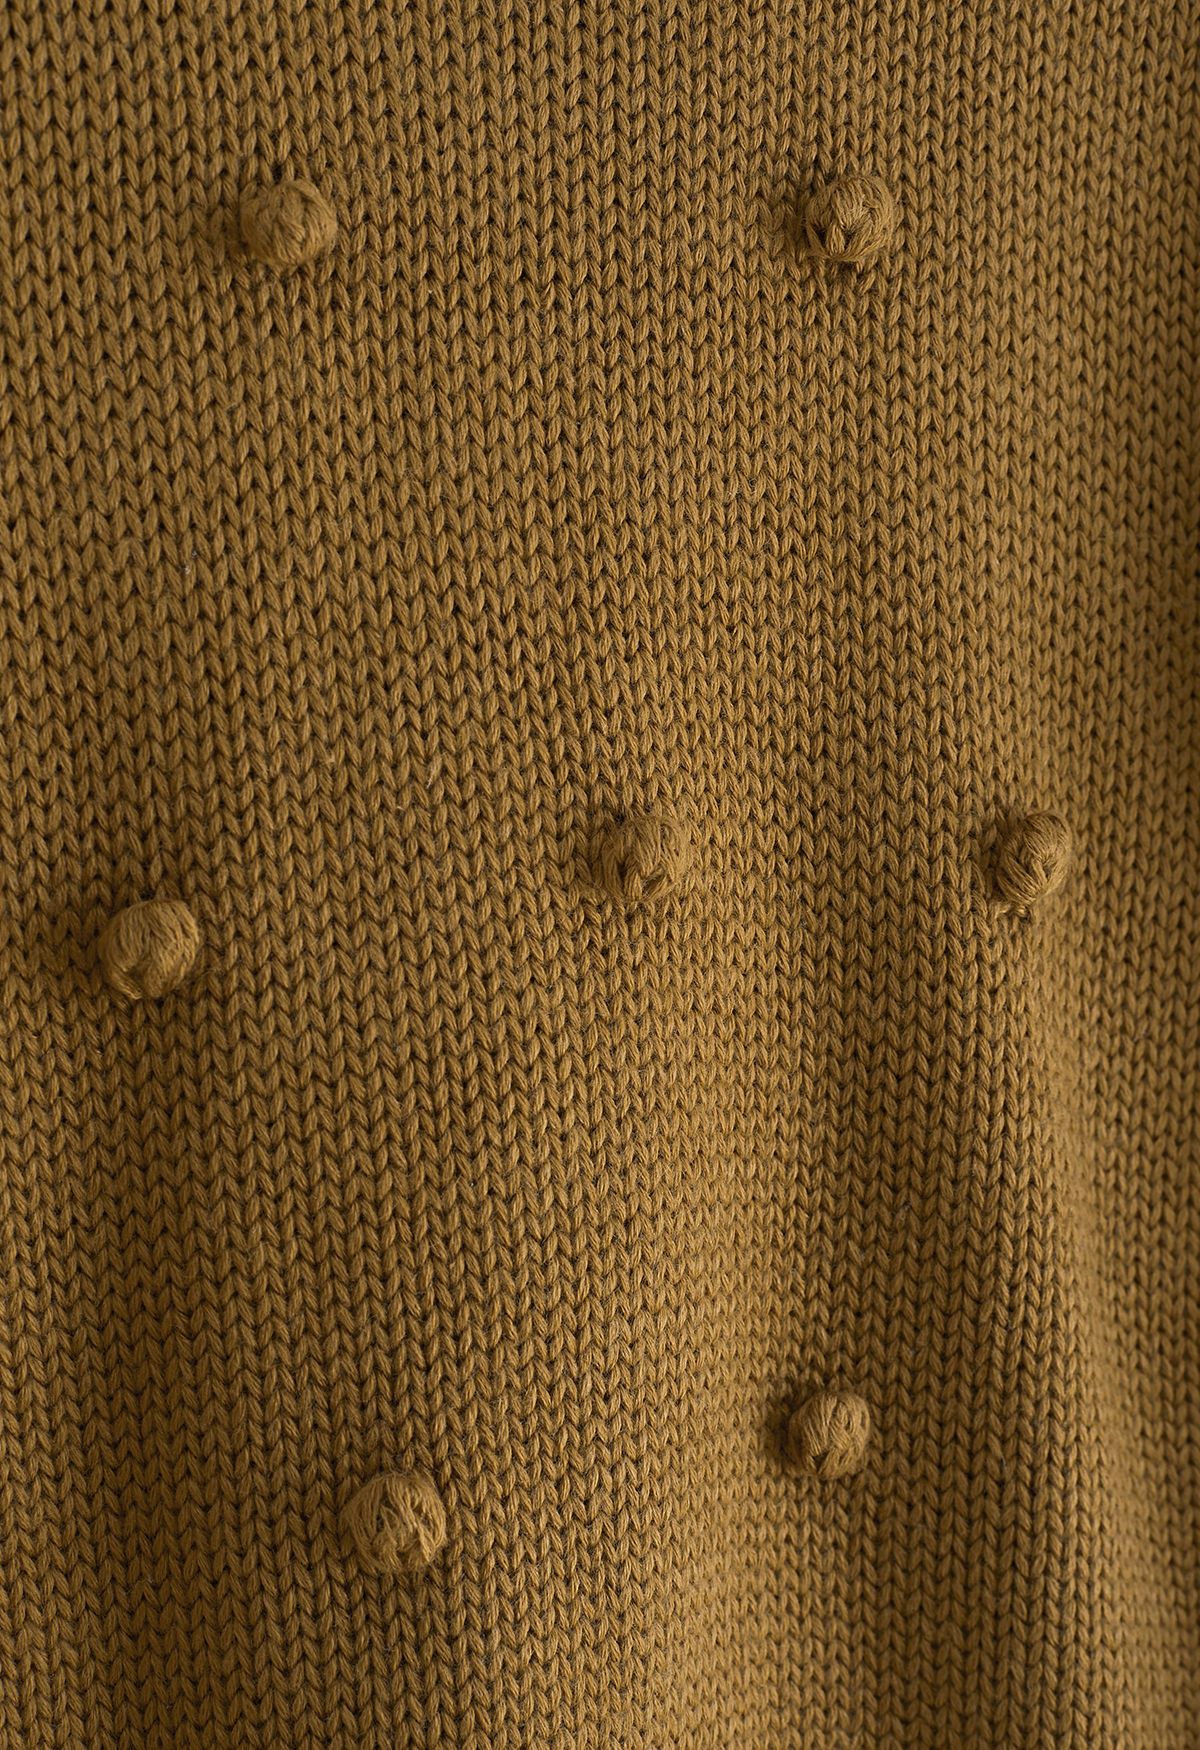 Suéter tejido a mano con pompones en color caramelo para niños